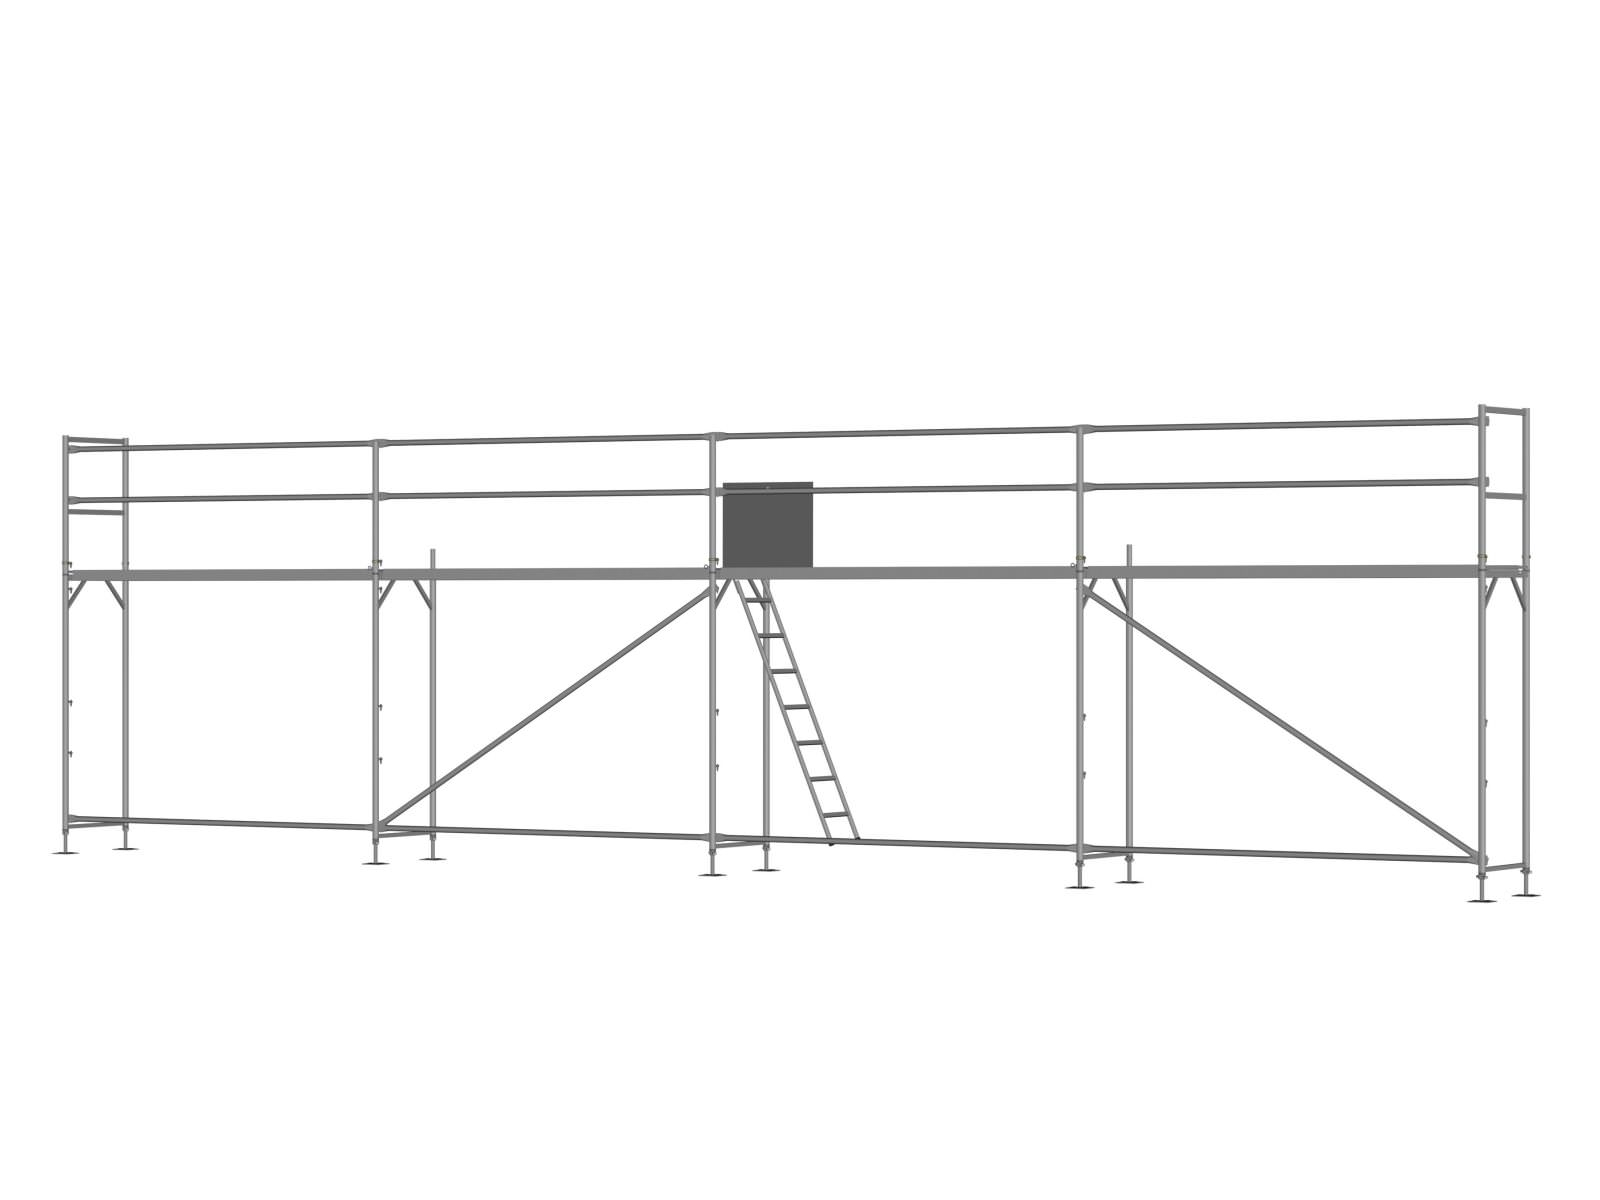 Alu Traufseitengerüst 48 qm - 3,0 m Felder - 12 m lang - 4 m Arbeitshöhe - Basis-Gerüst inkl. Aufstieg & Befestigung